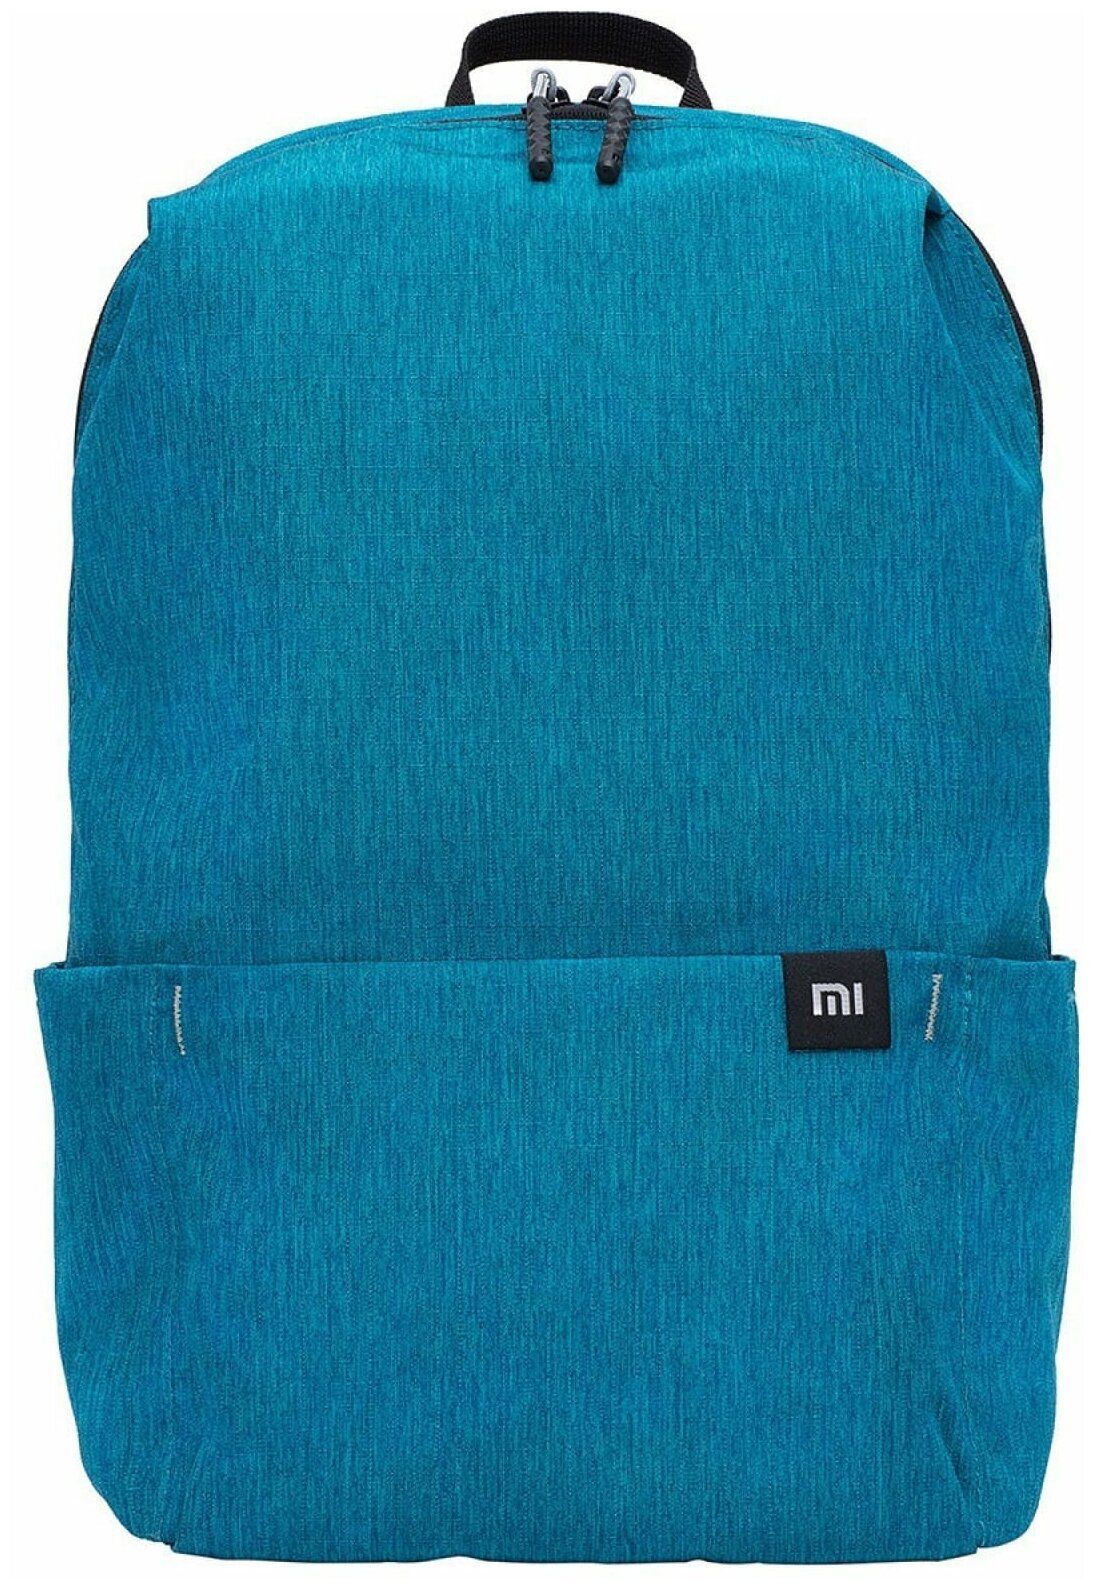 Рюкзак Xiaomi Mi Mini Backpack 10L Light Blue рюкзак xiaomi mi mini backpack 10l dark blue zjb4145gl